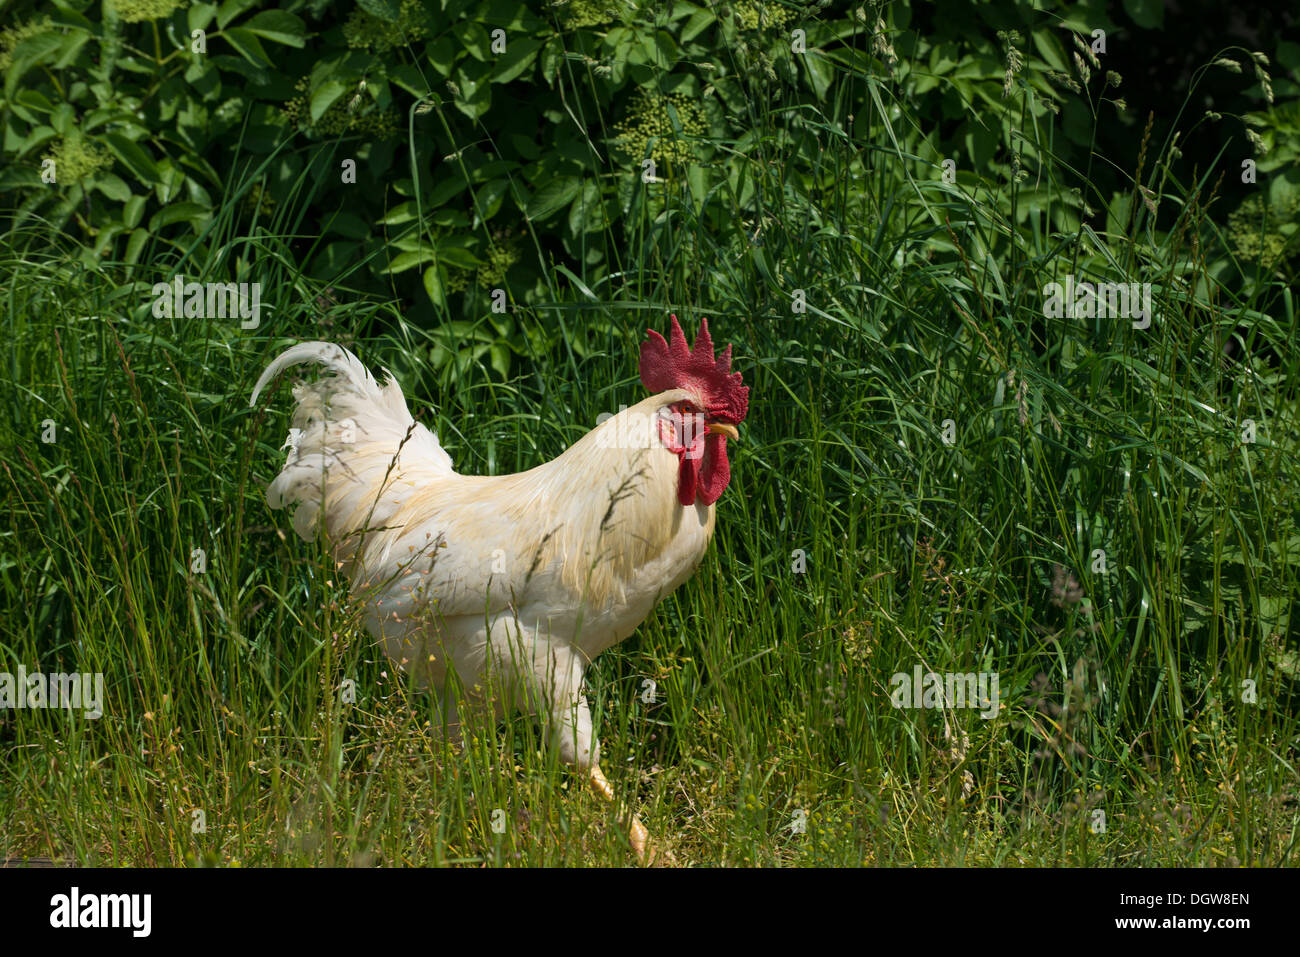 Orgulloso gallo blanco en una granja Foto de stock